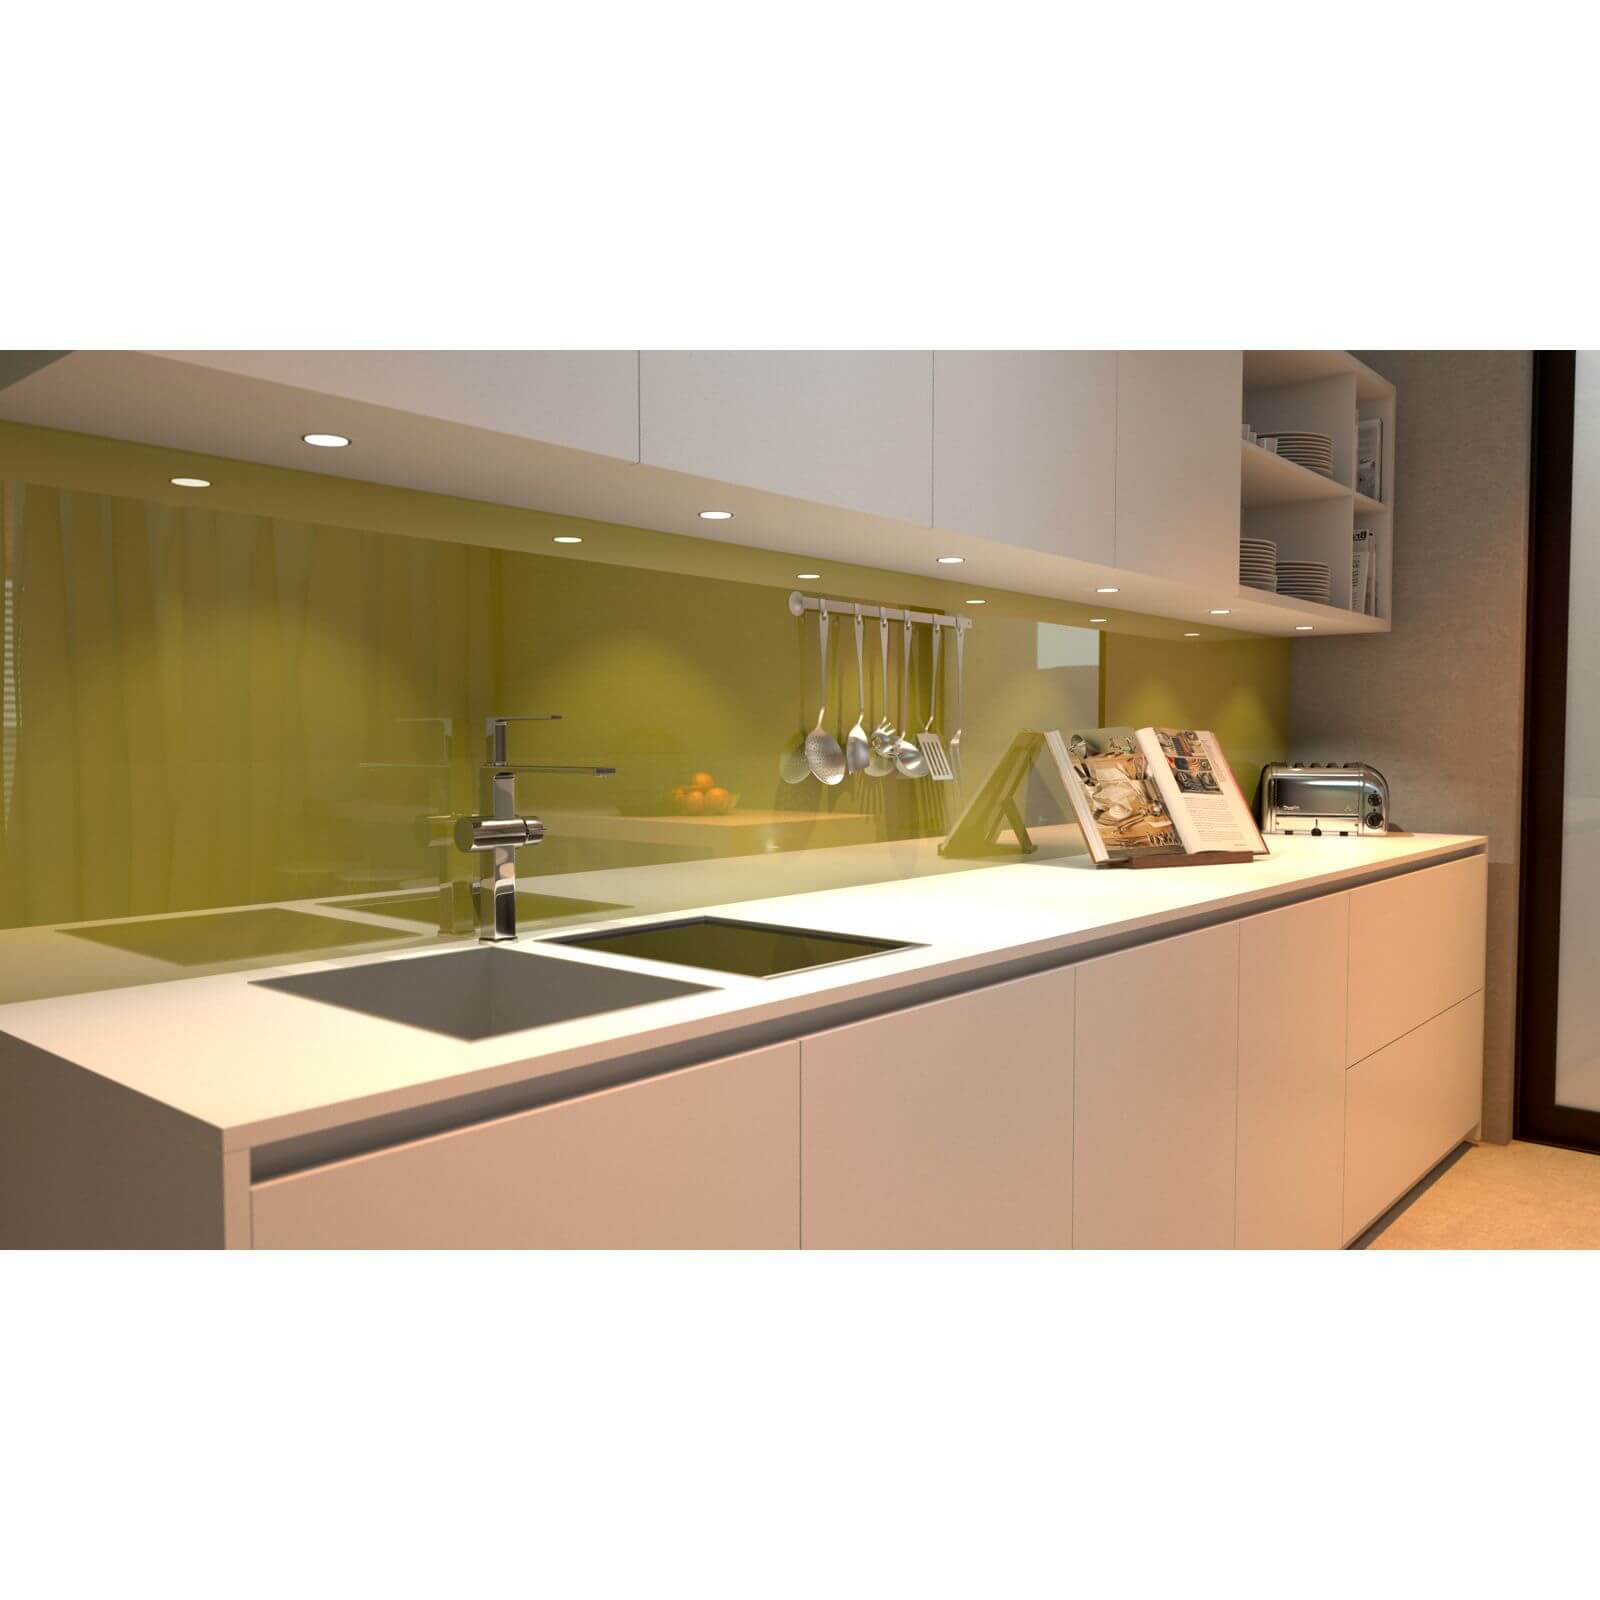 Zenolite Acrylic Kitchen Splashback Panel - 2070 x 500mm - Forest